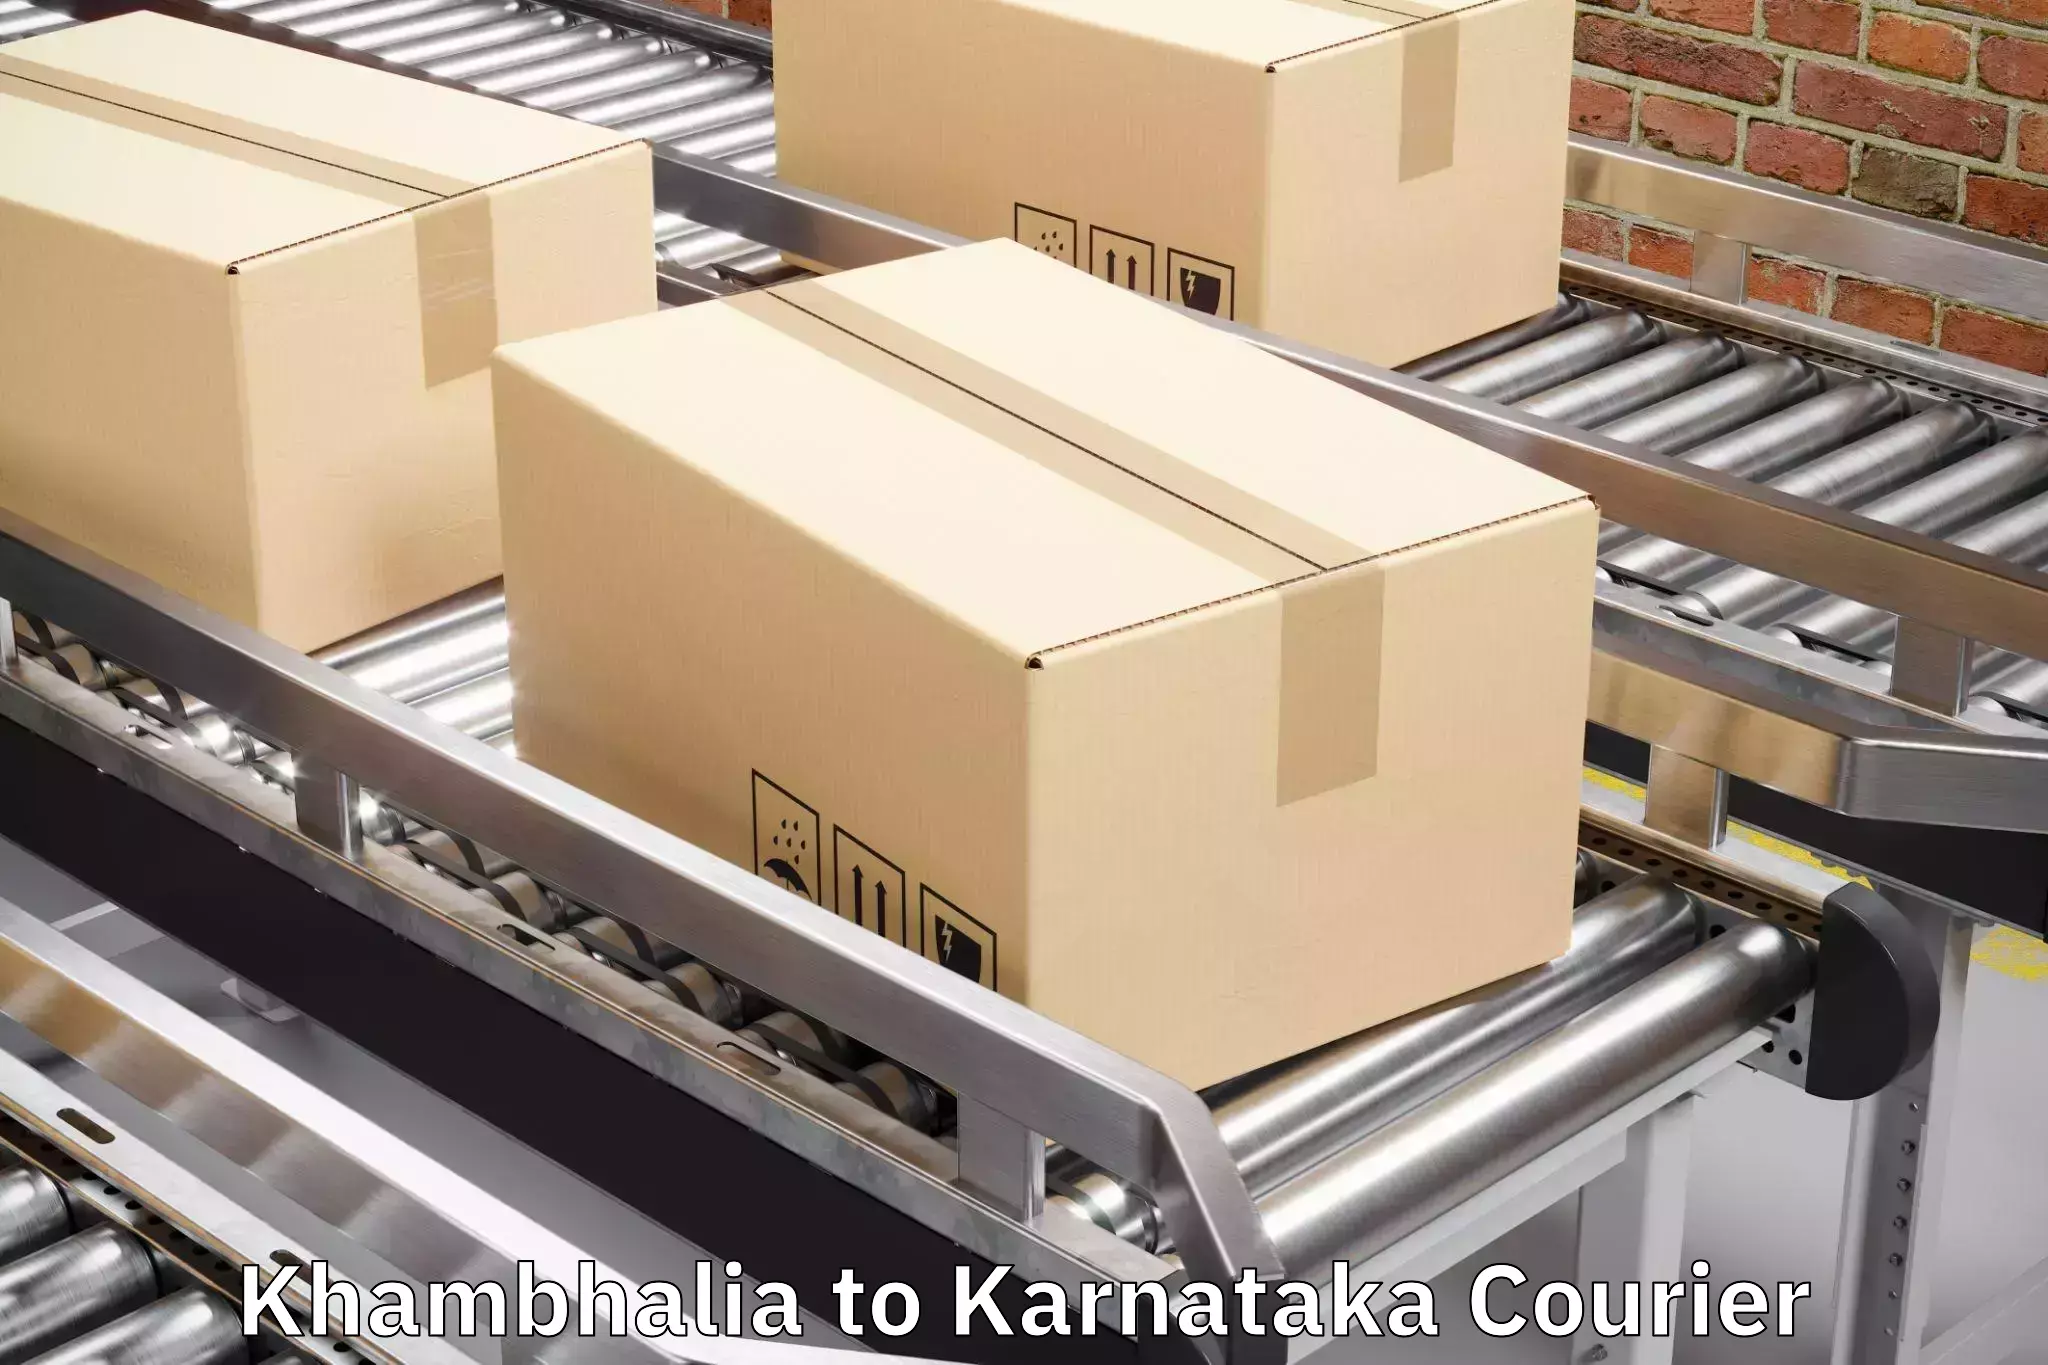 Luggage shipment specialists Khambhalia to Ukkadagatri